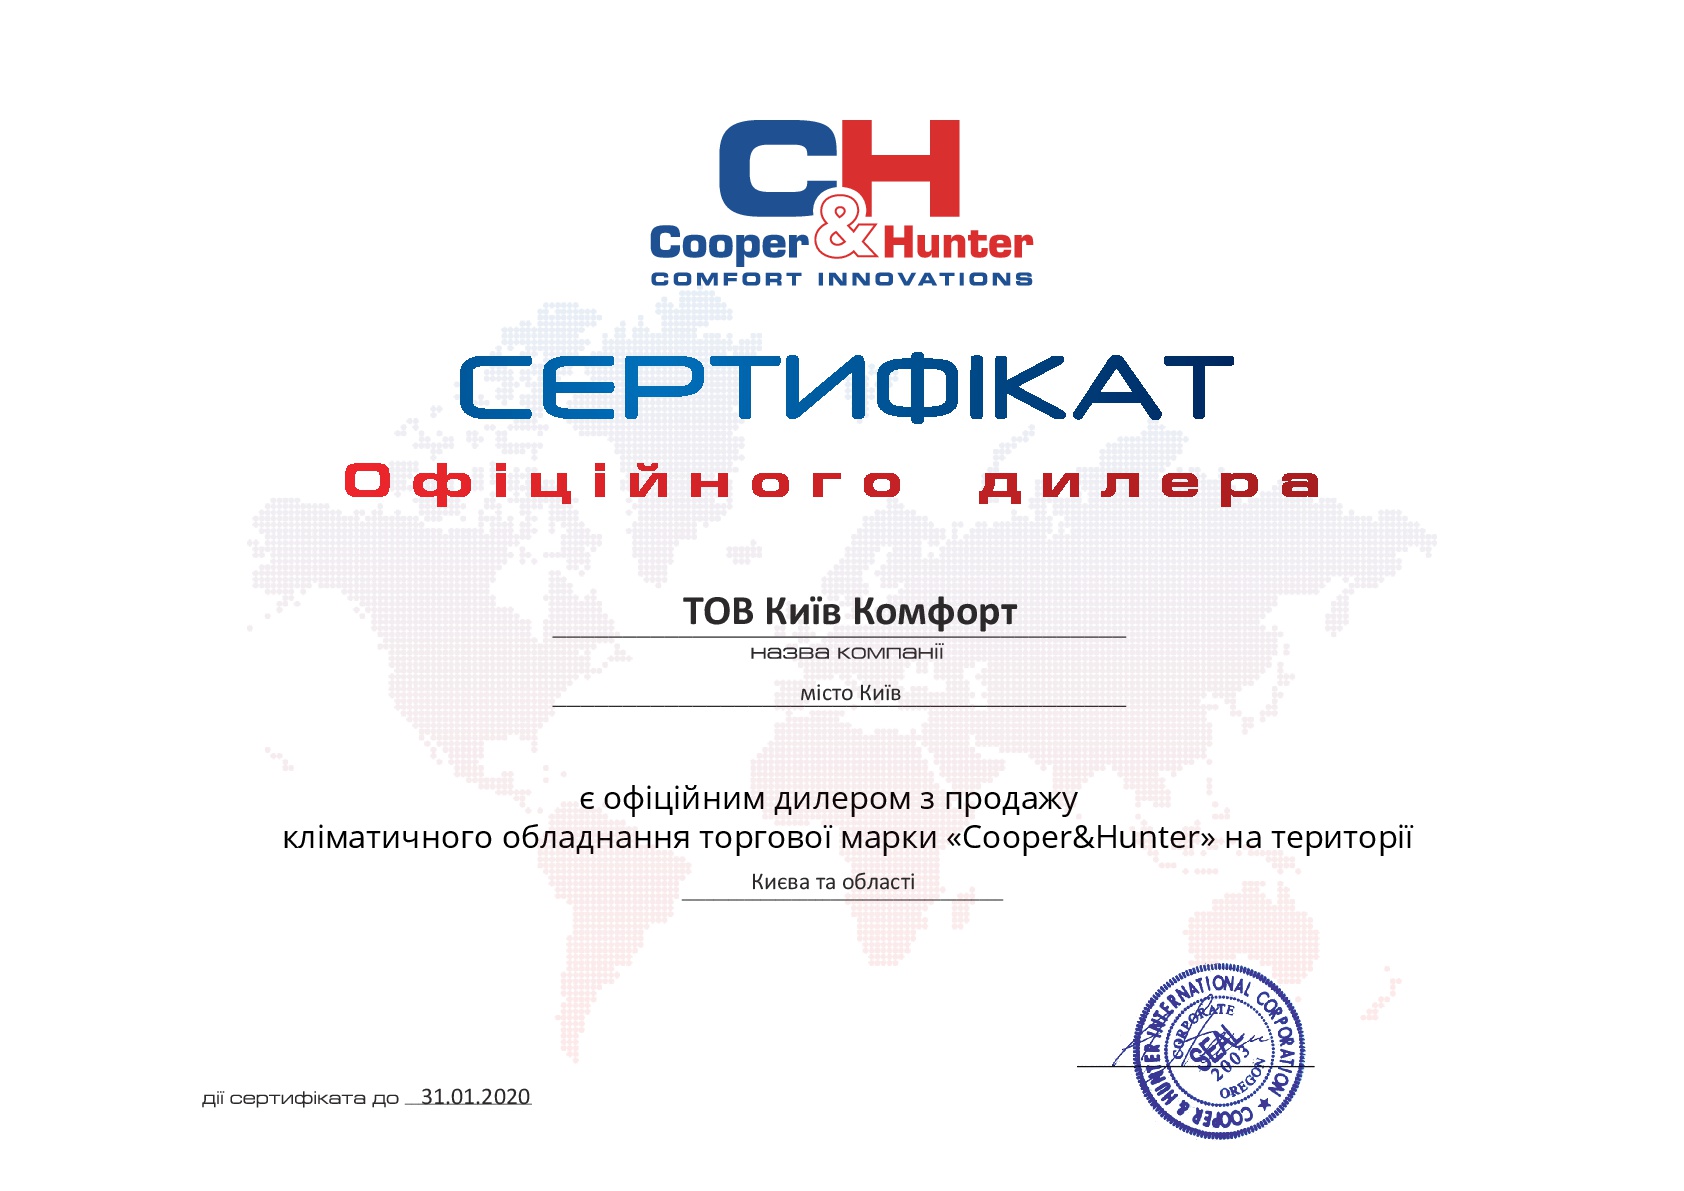 Сертификат официального диллера Cooper&Hunter 2019